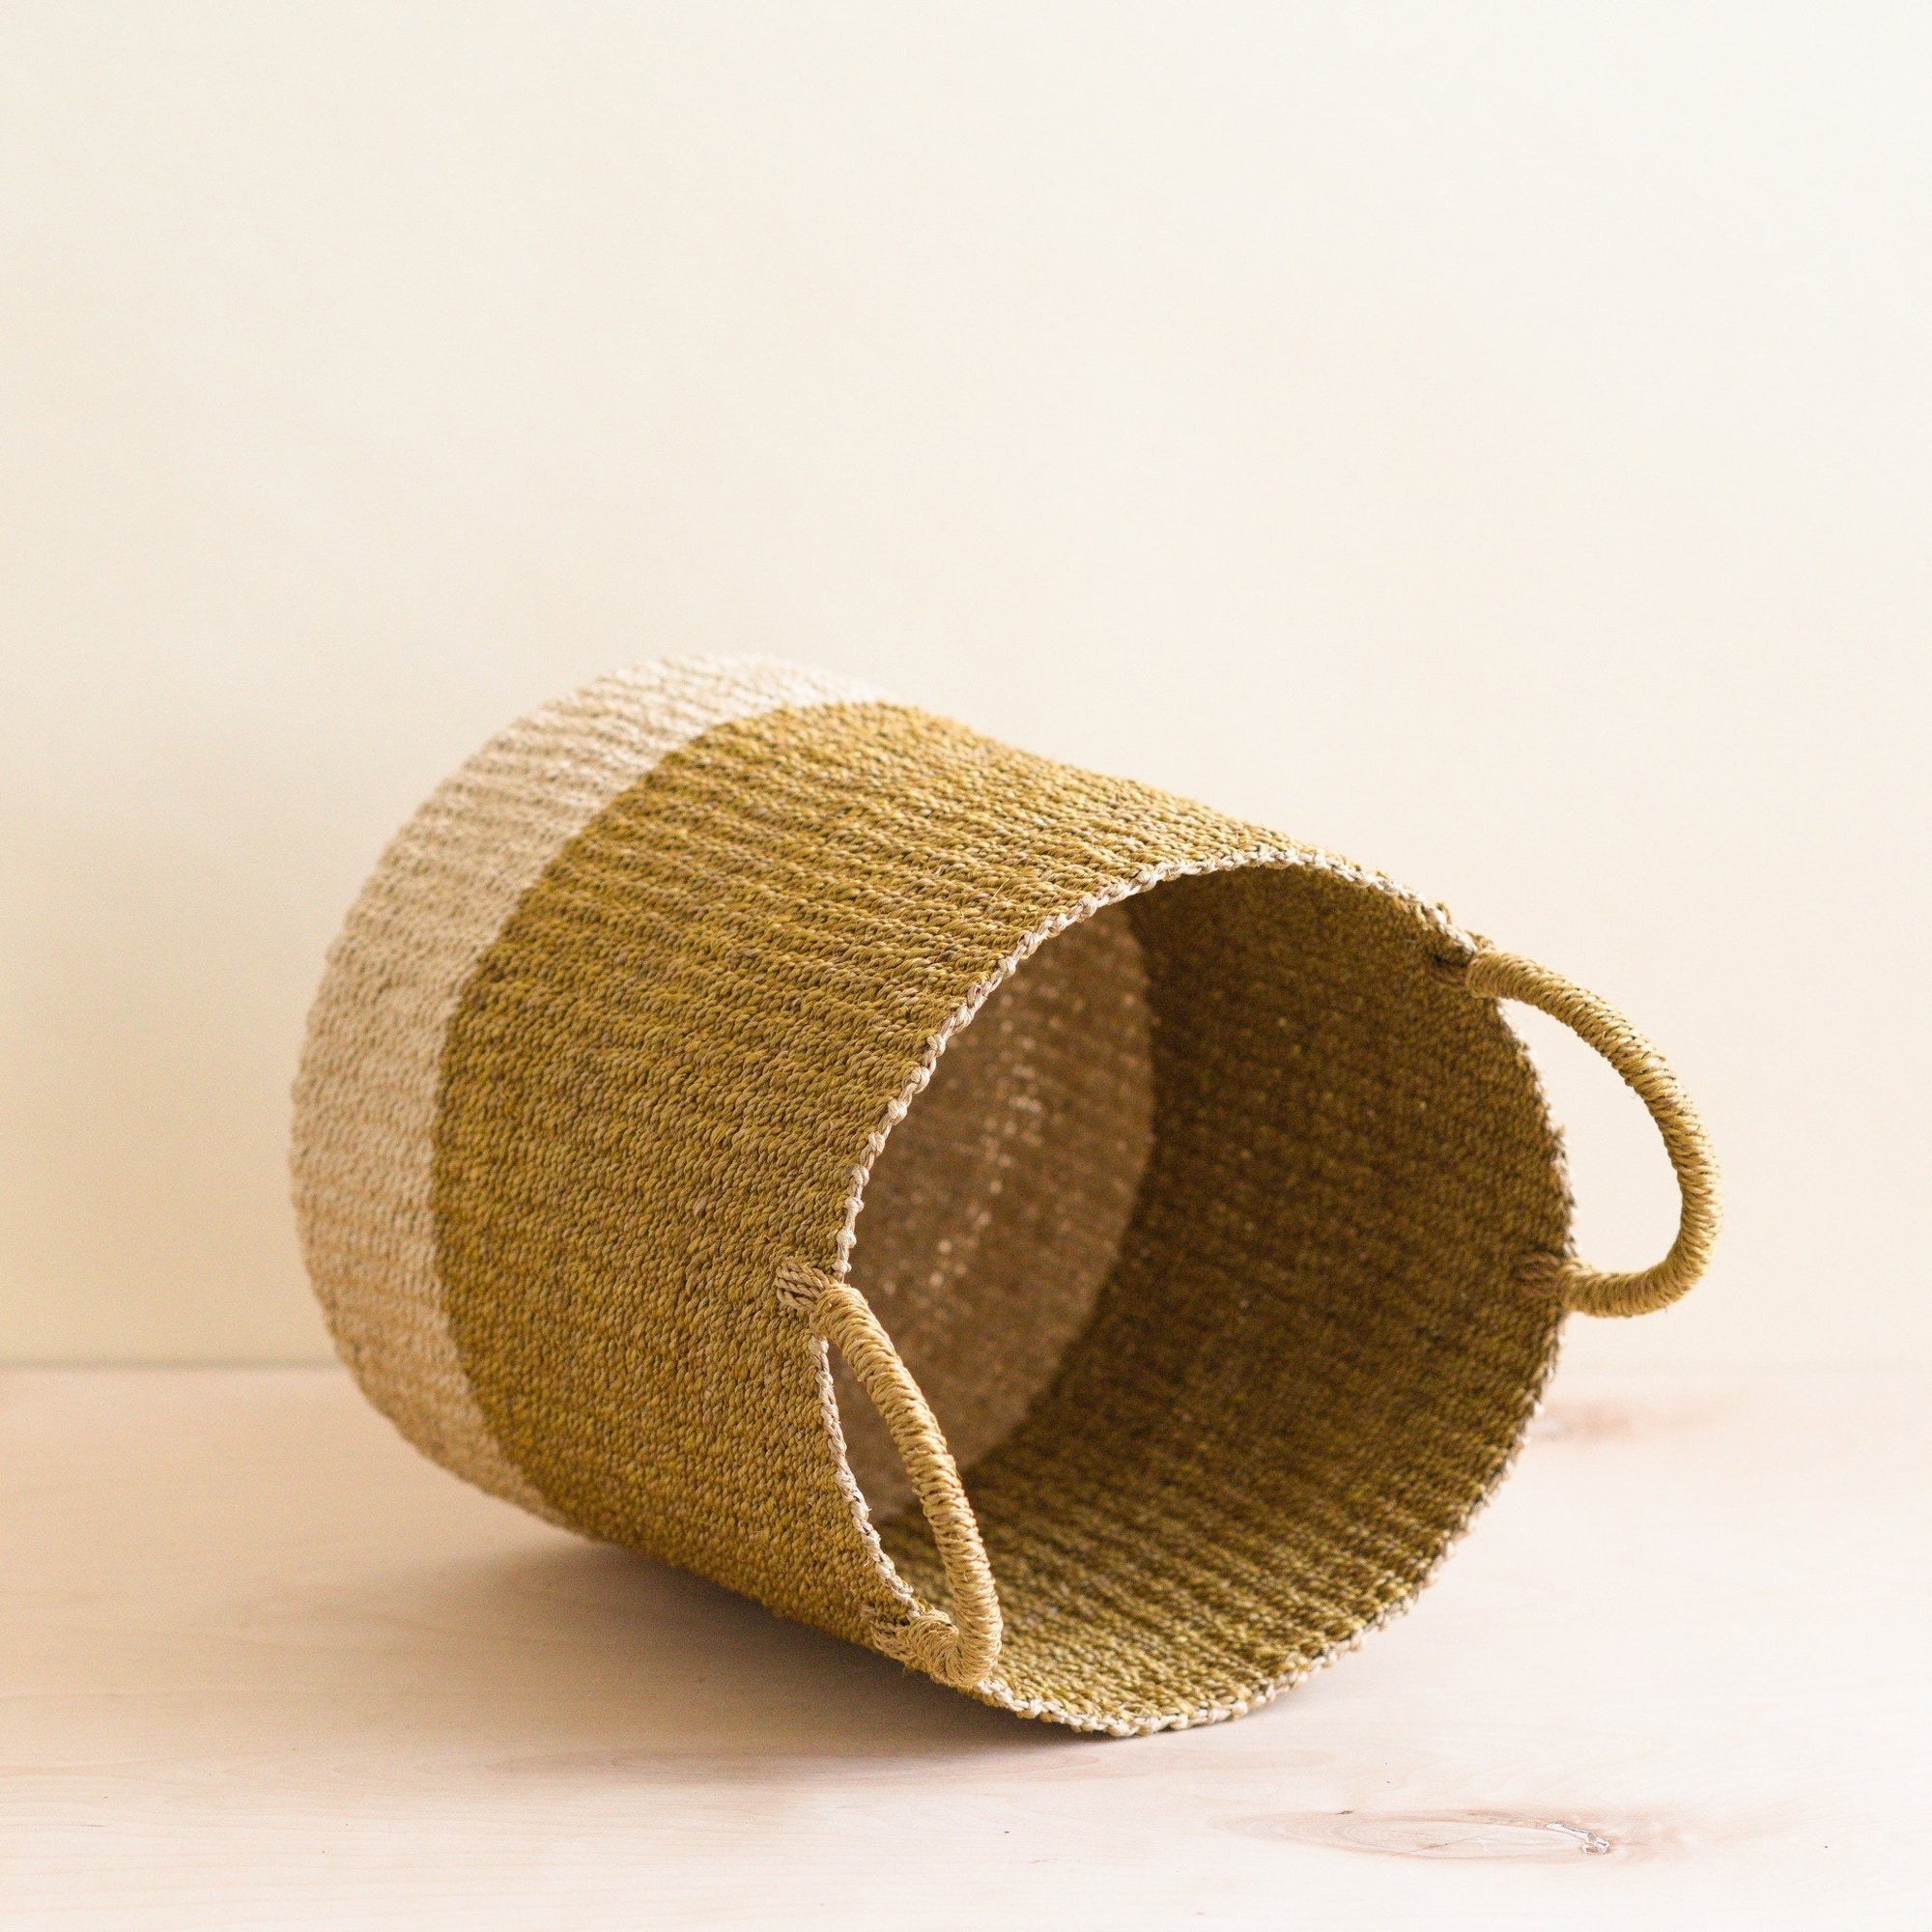 Baskets - Mustard Floor Basket with Handle - Natural Baskets | LIKHÂ - LIKHÂ